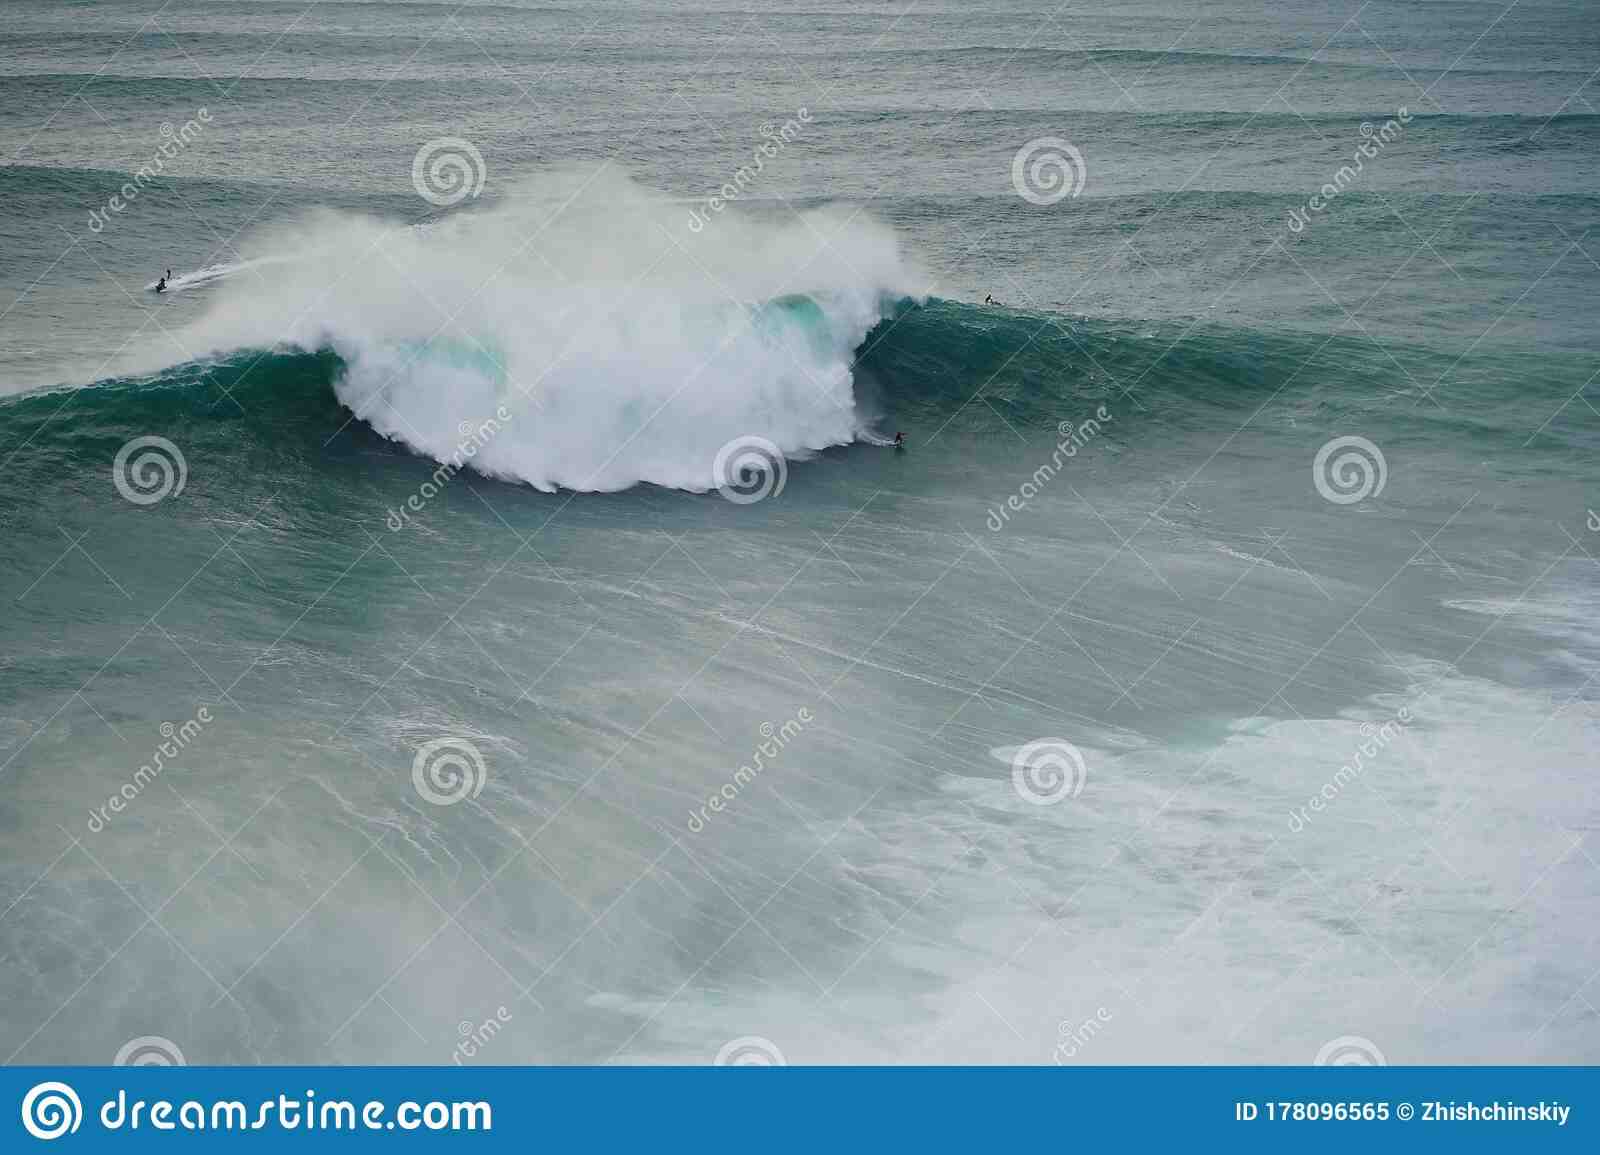 Comment calculer la hauteur de la vague ?